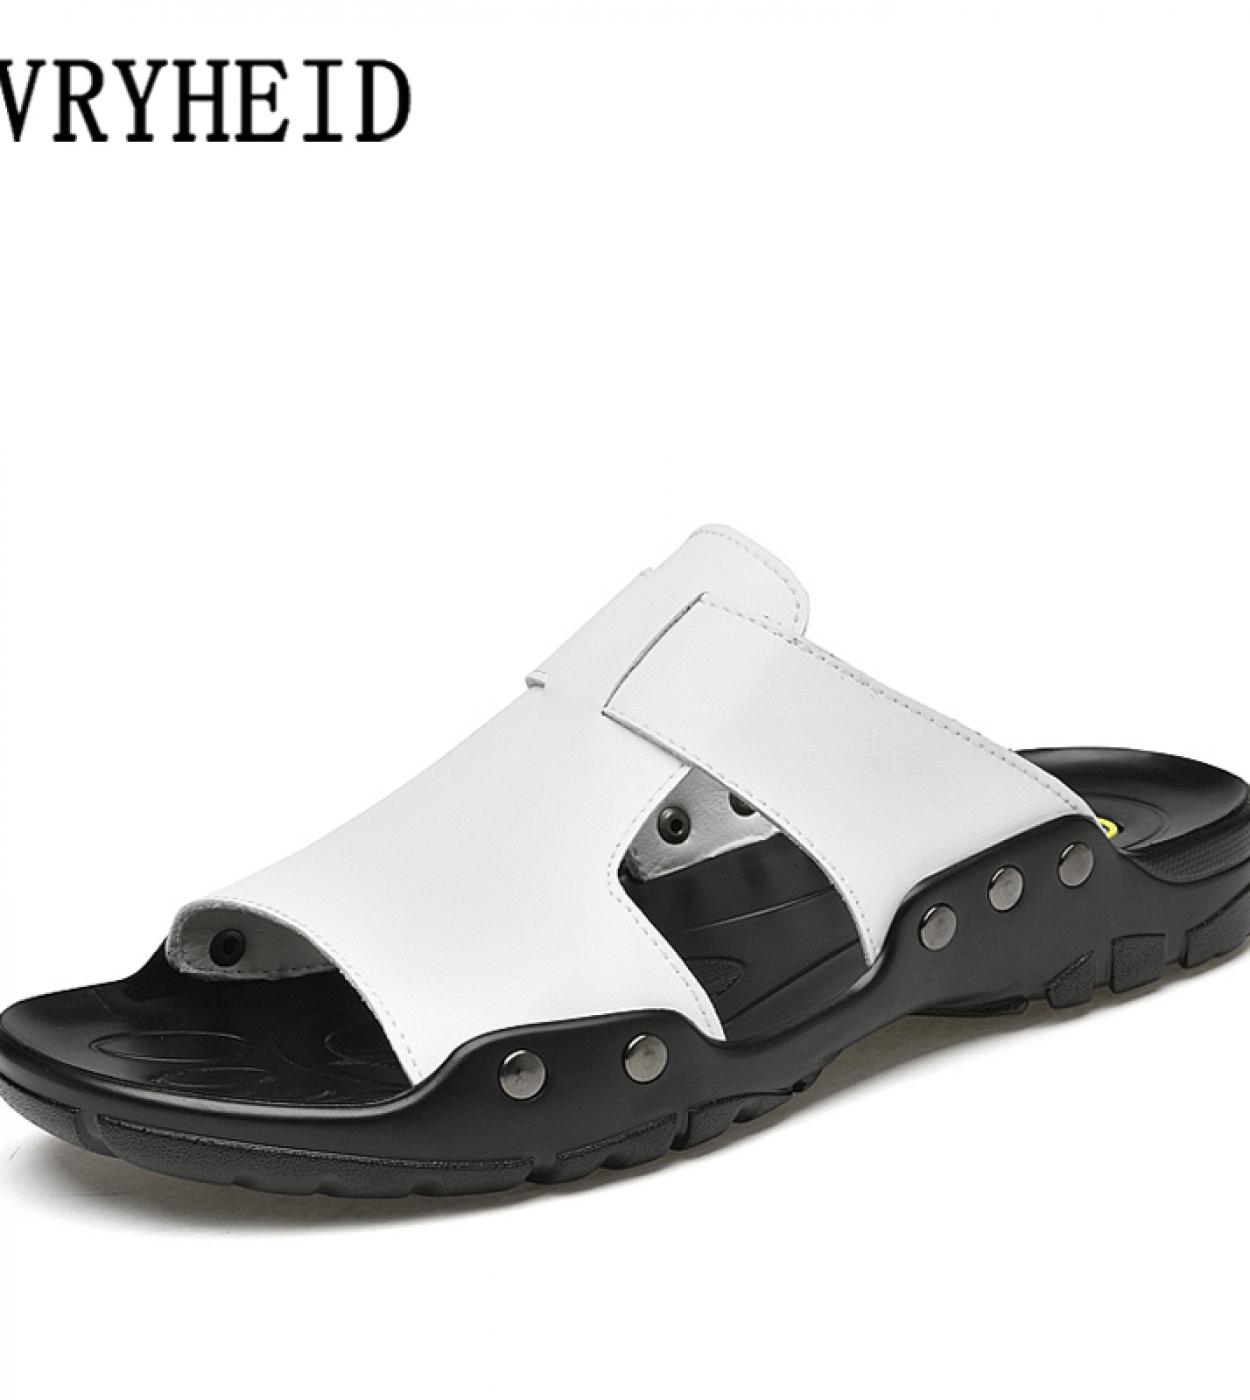 Zapatillas de cuero genuino Vryheid, zapatos de verano para hombre, chanclas informales para exteriores, sandalias de playa anti